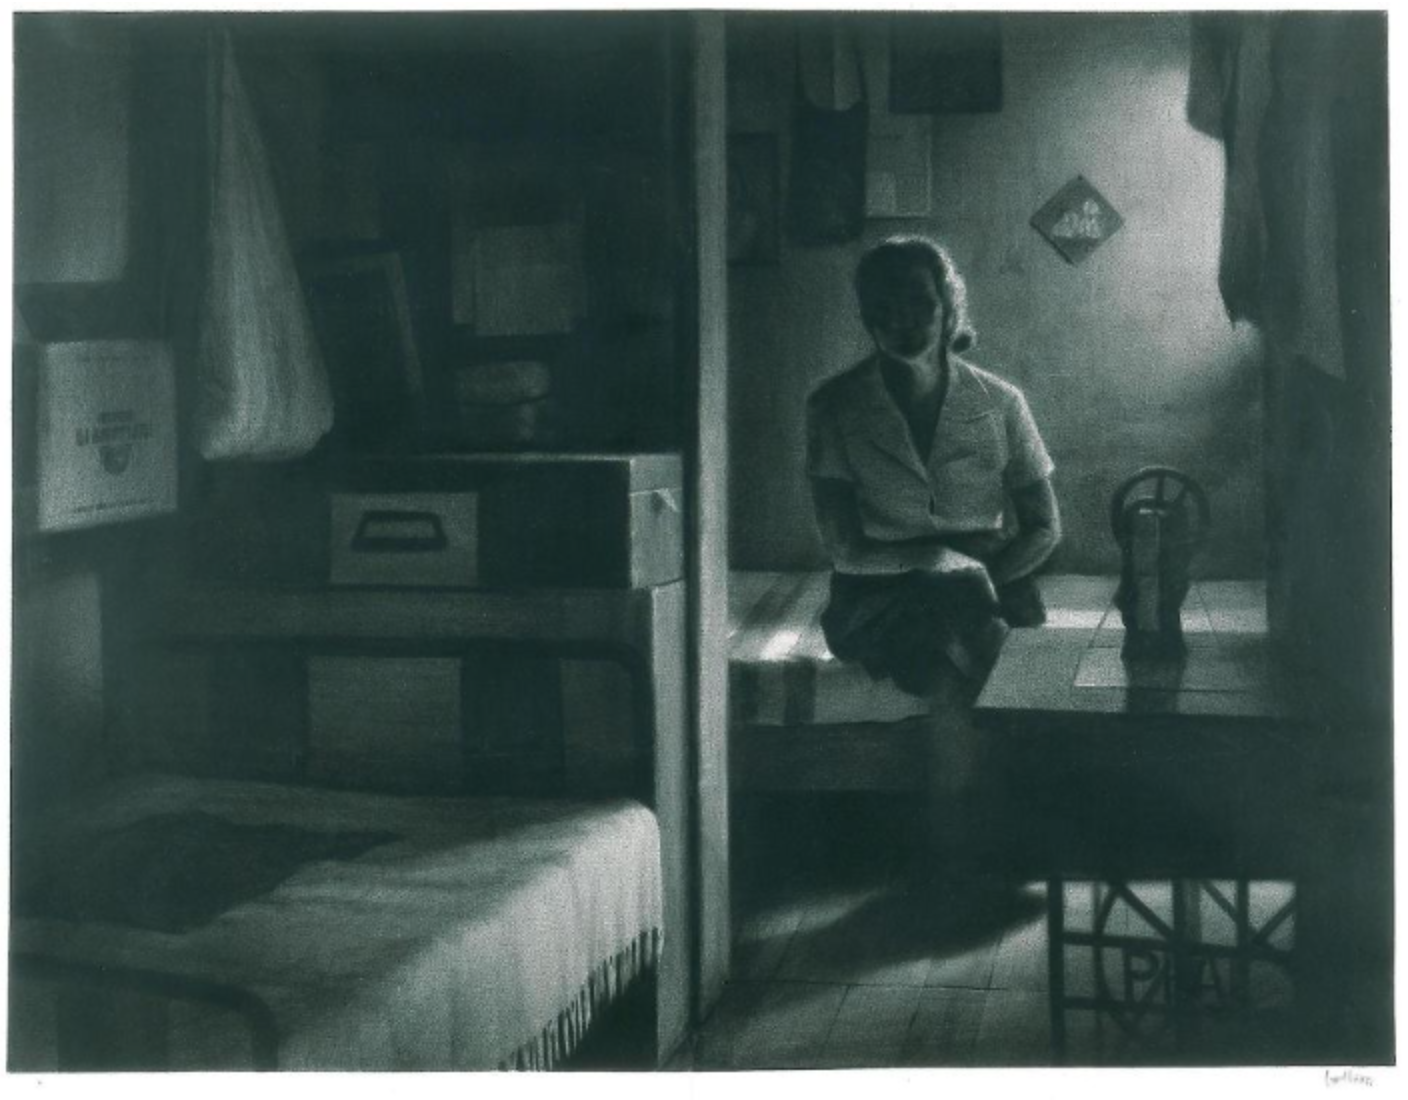 Dibujo en blanco y negro de una persona sentada en una cama, dentro de una habitación oscura con dos camas. En la esquina superior derecha de la imagen, hay una luz tenue que ilumina la habitación. En primer plano, hay una máquina de coser.